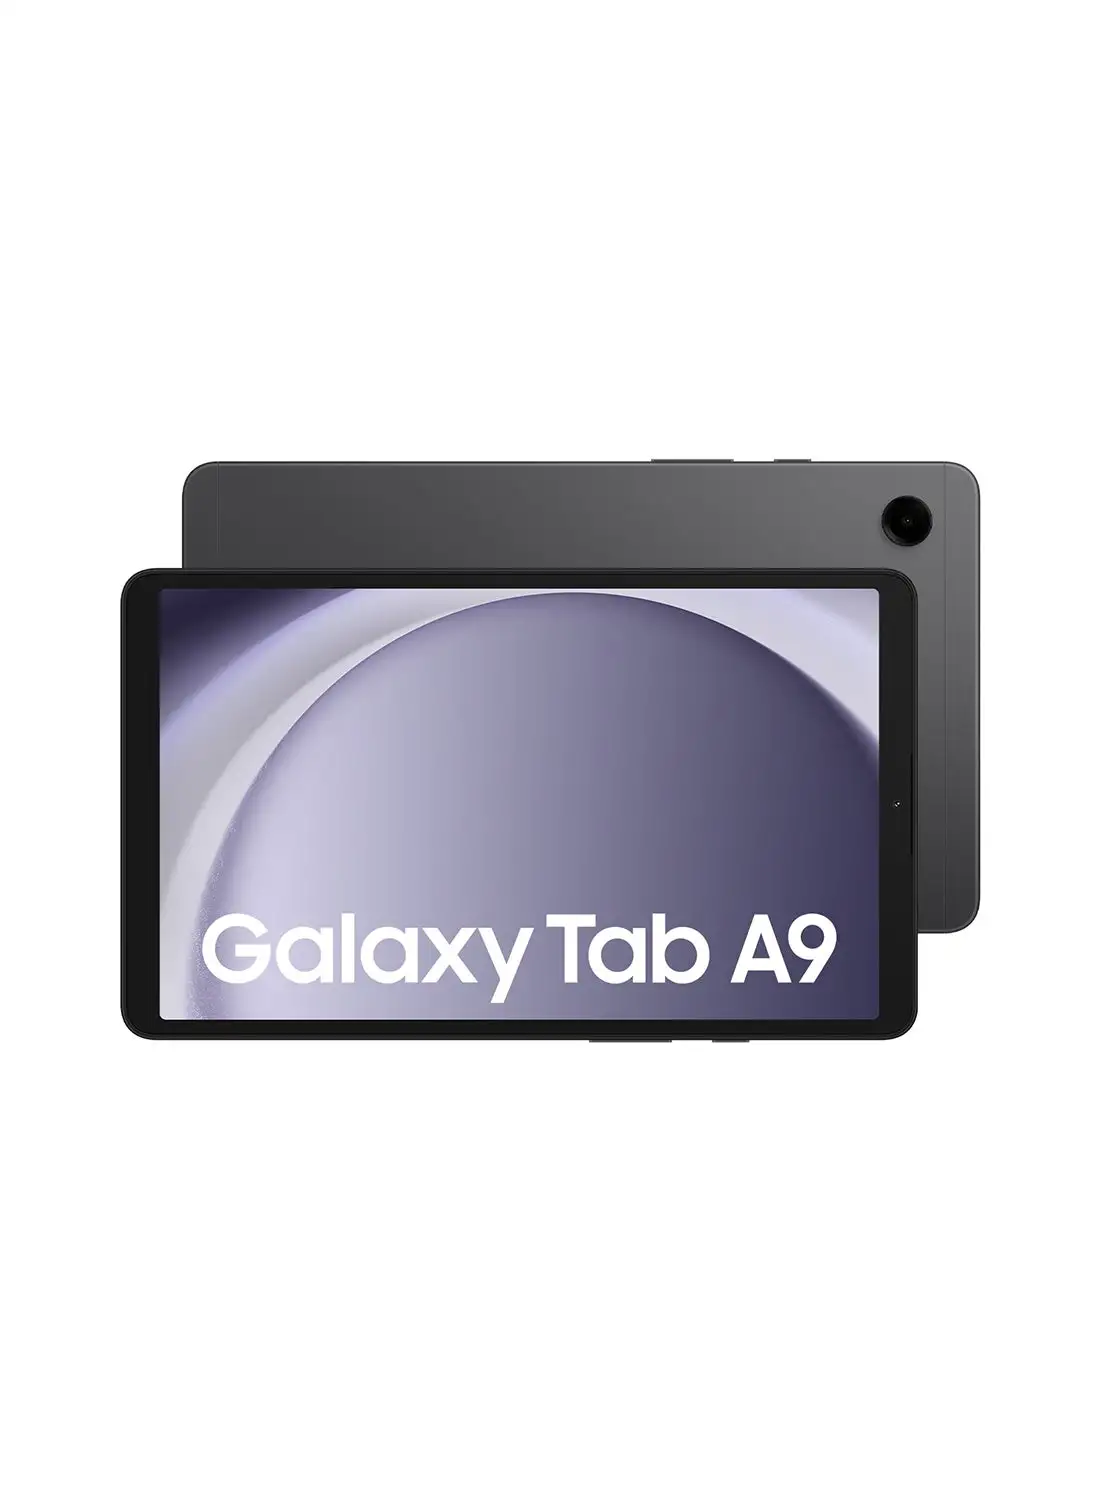 Samsung Galaxy Tab A9 Graphite 8GB RAM 128GB Wifi - Middle East Version